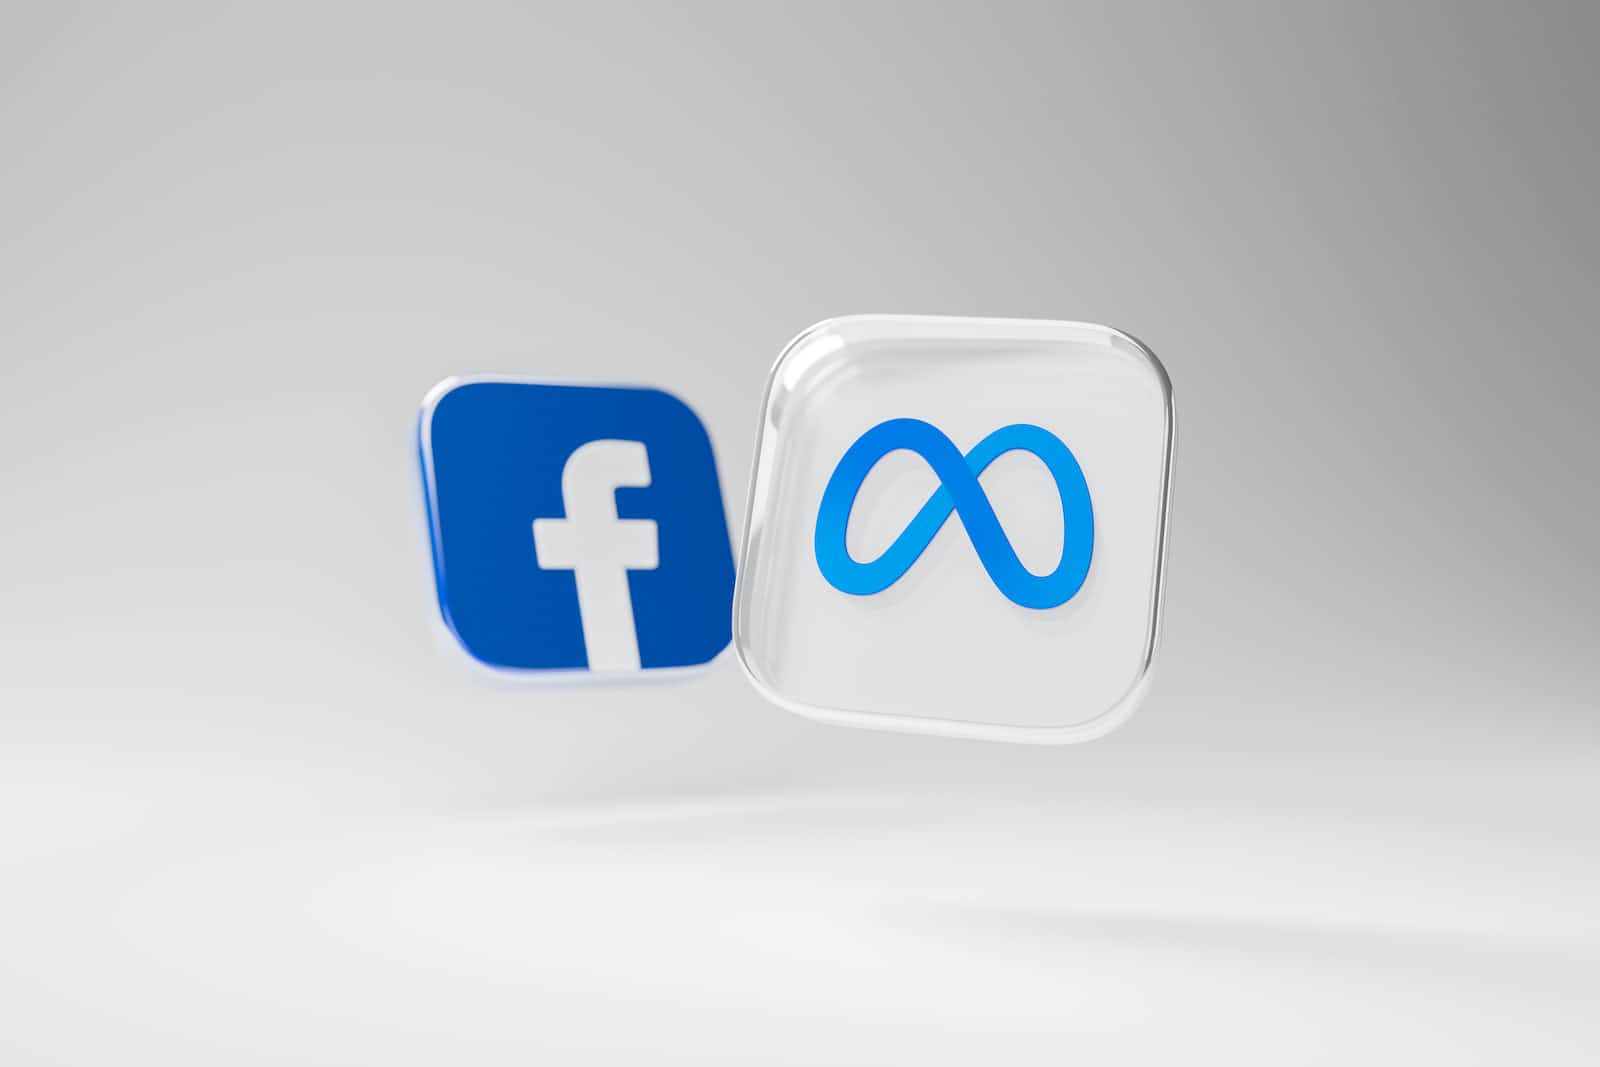 Trademarked logos of Facebook and Meta